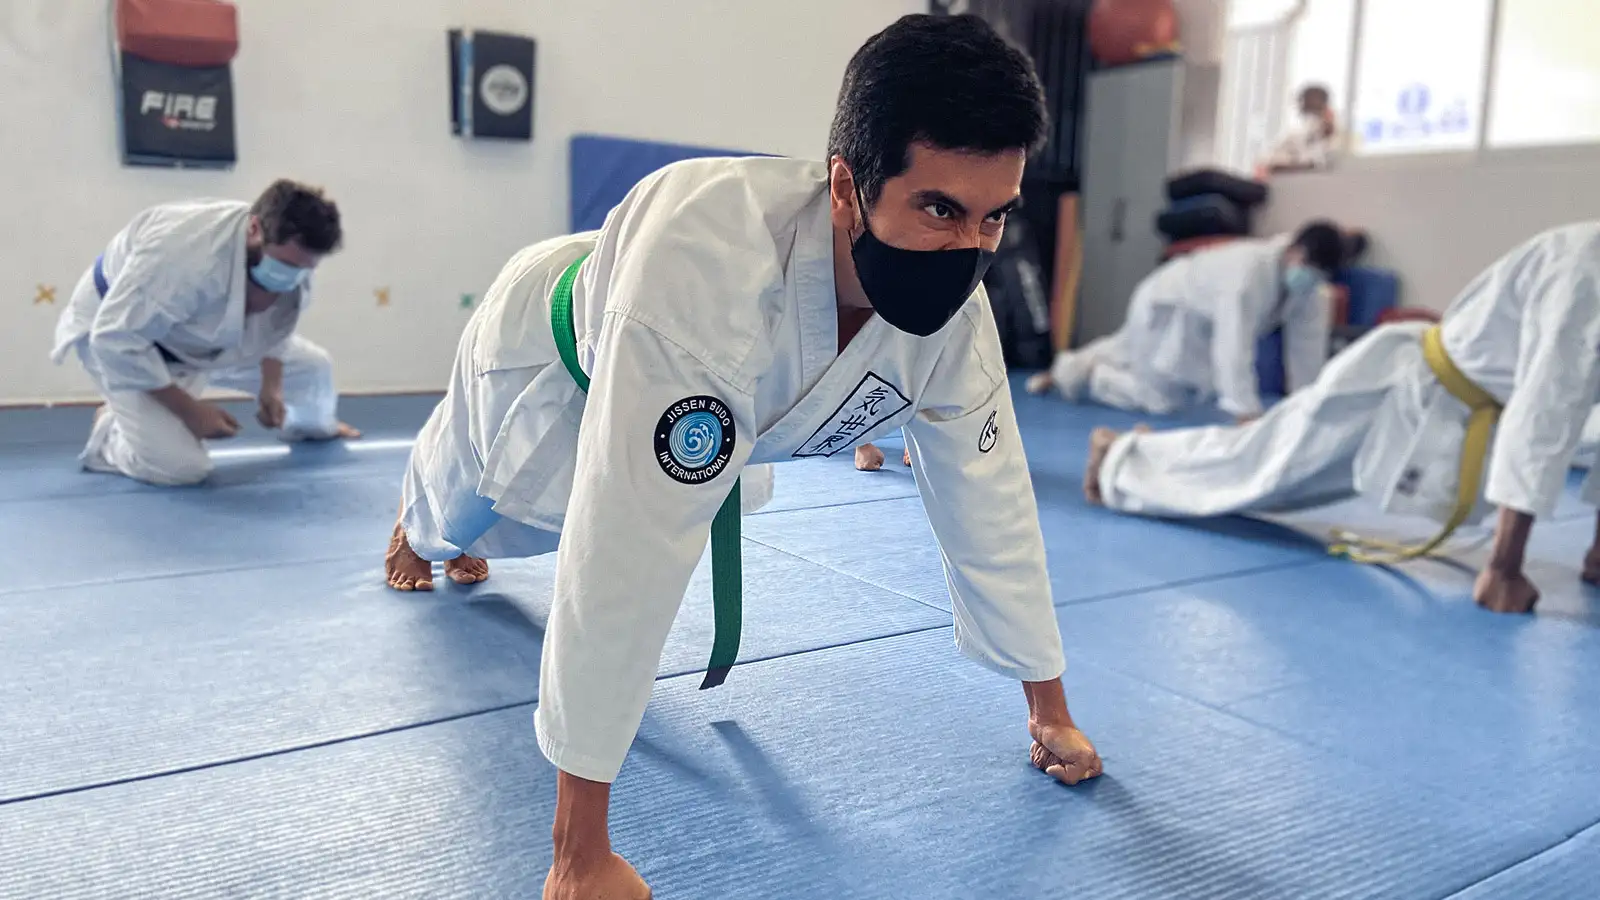 Escuela de artes marciales, adulto practicando karate realizando ejercicio de fuerza